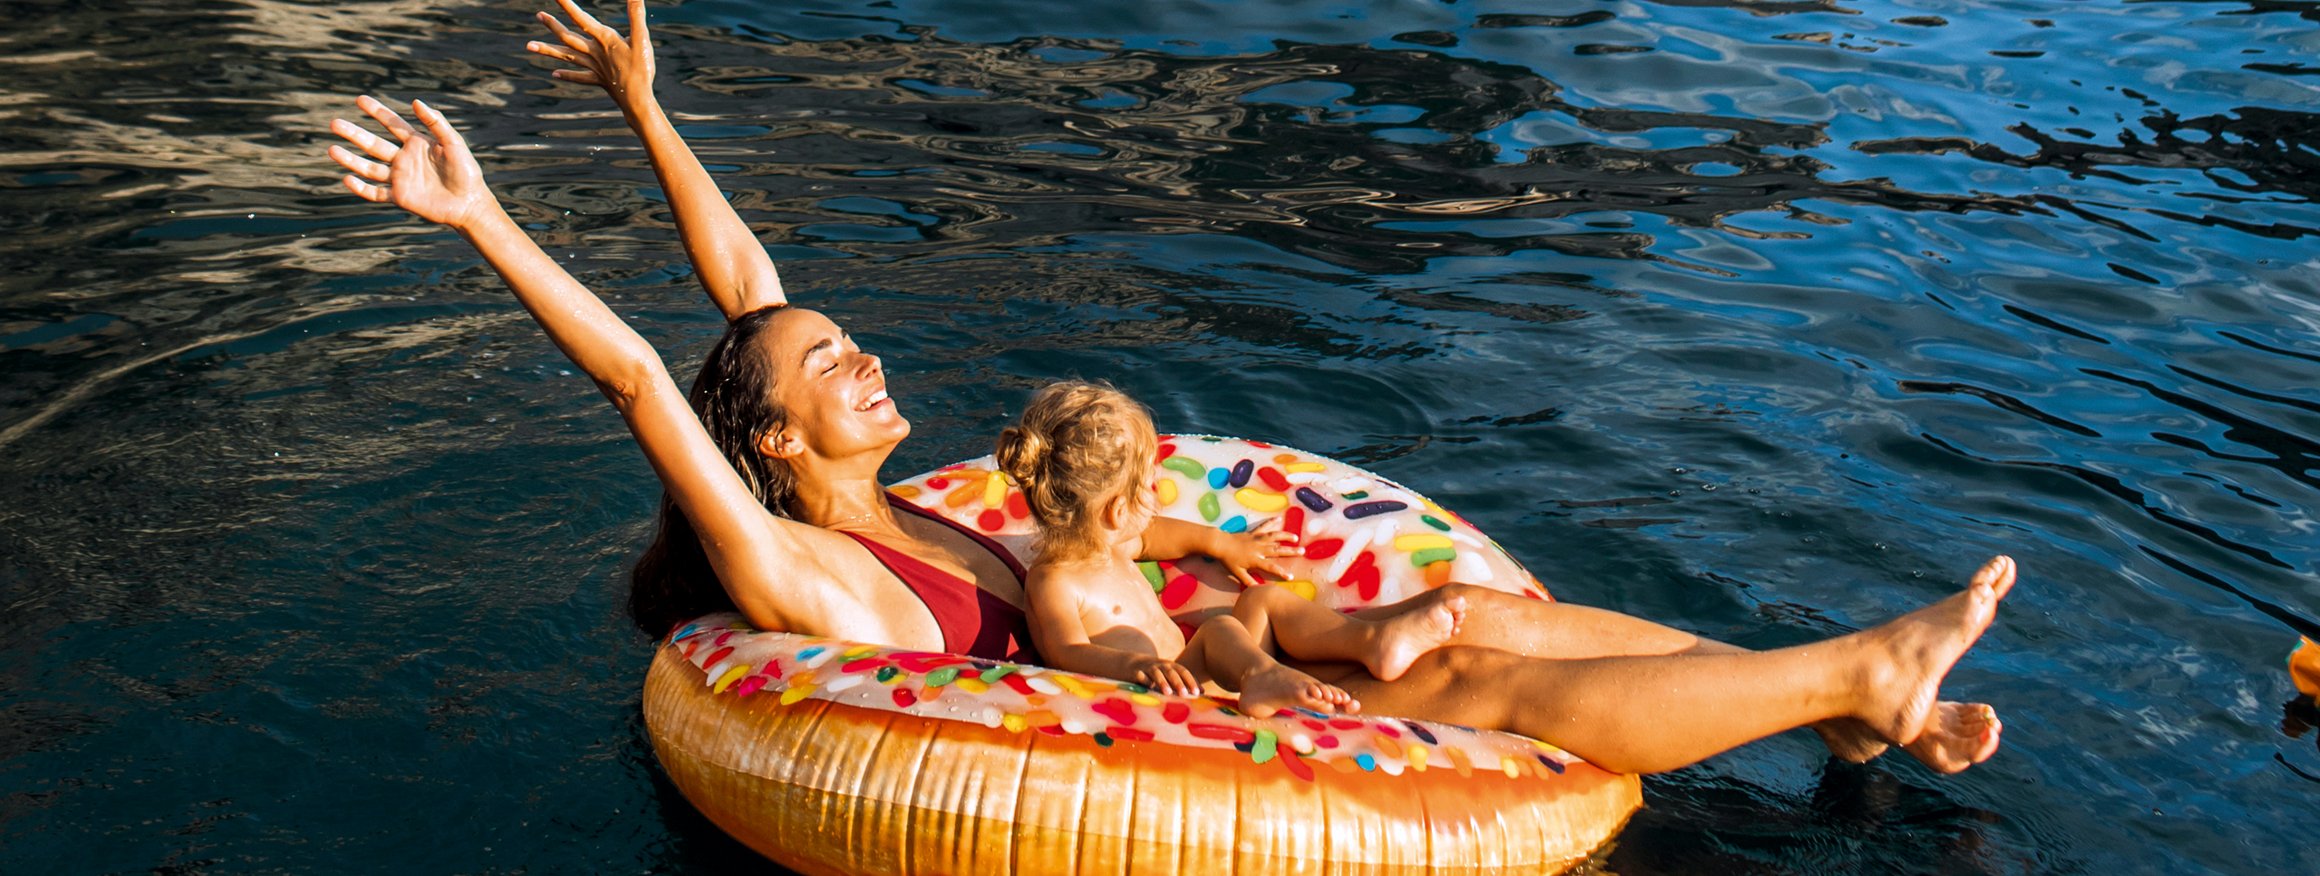 Eine Frau sitzt mit Badekleidung und ihrem Kind auf einer Schwimminsel im Wasser und reckt lachend die Arme nach oben